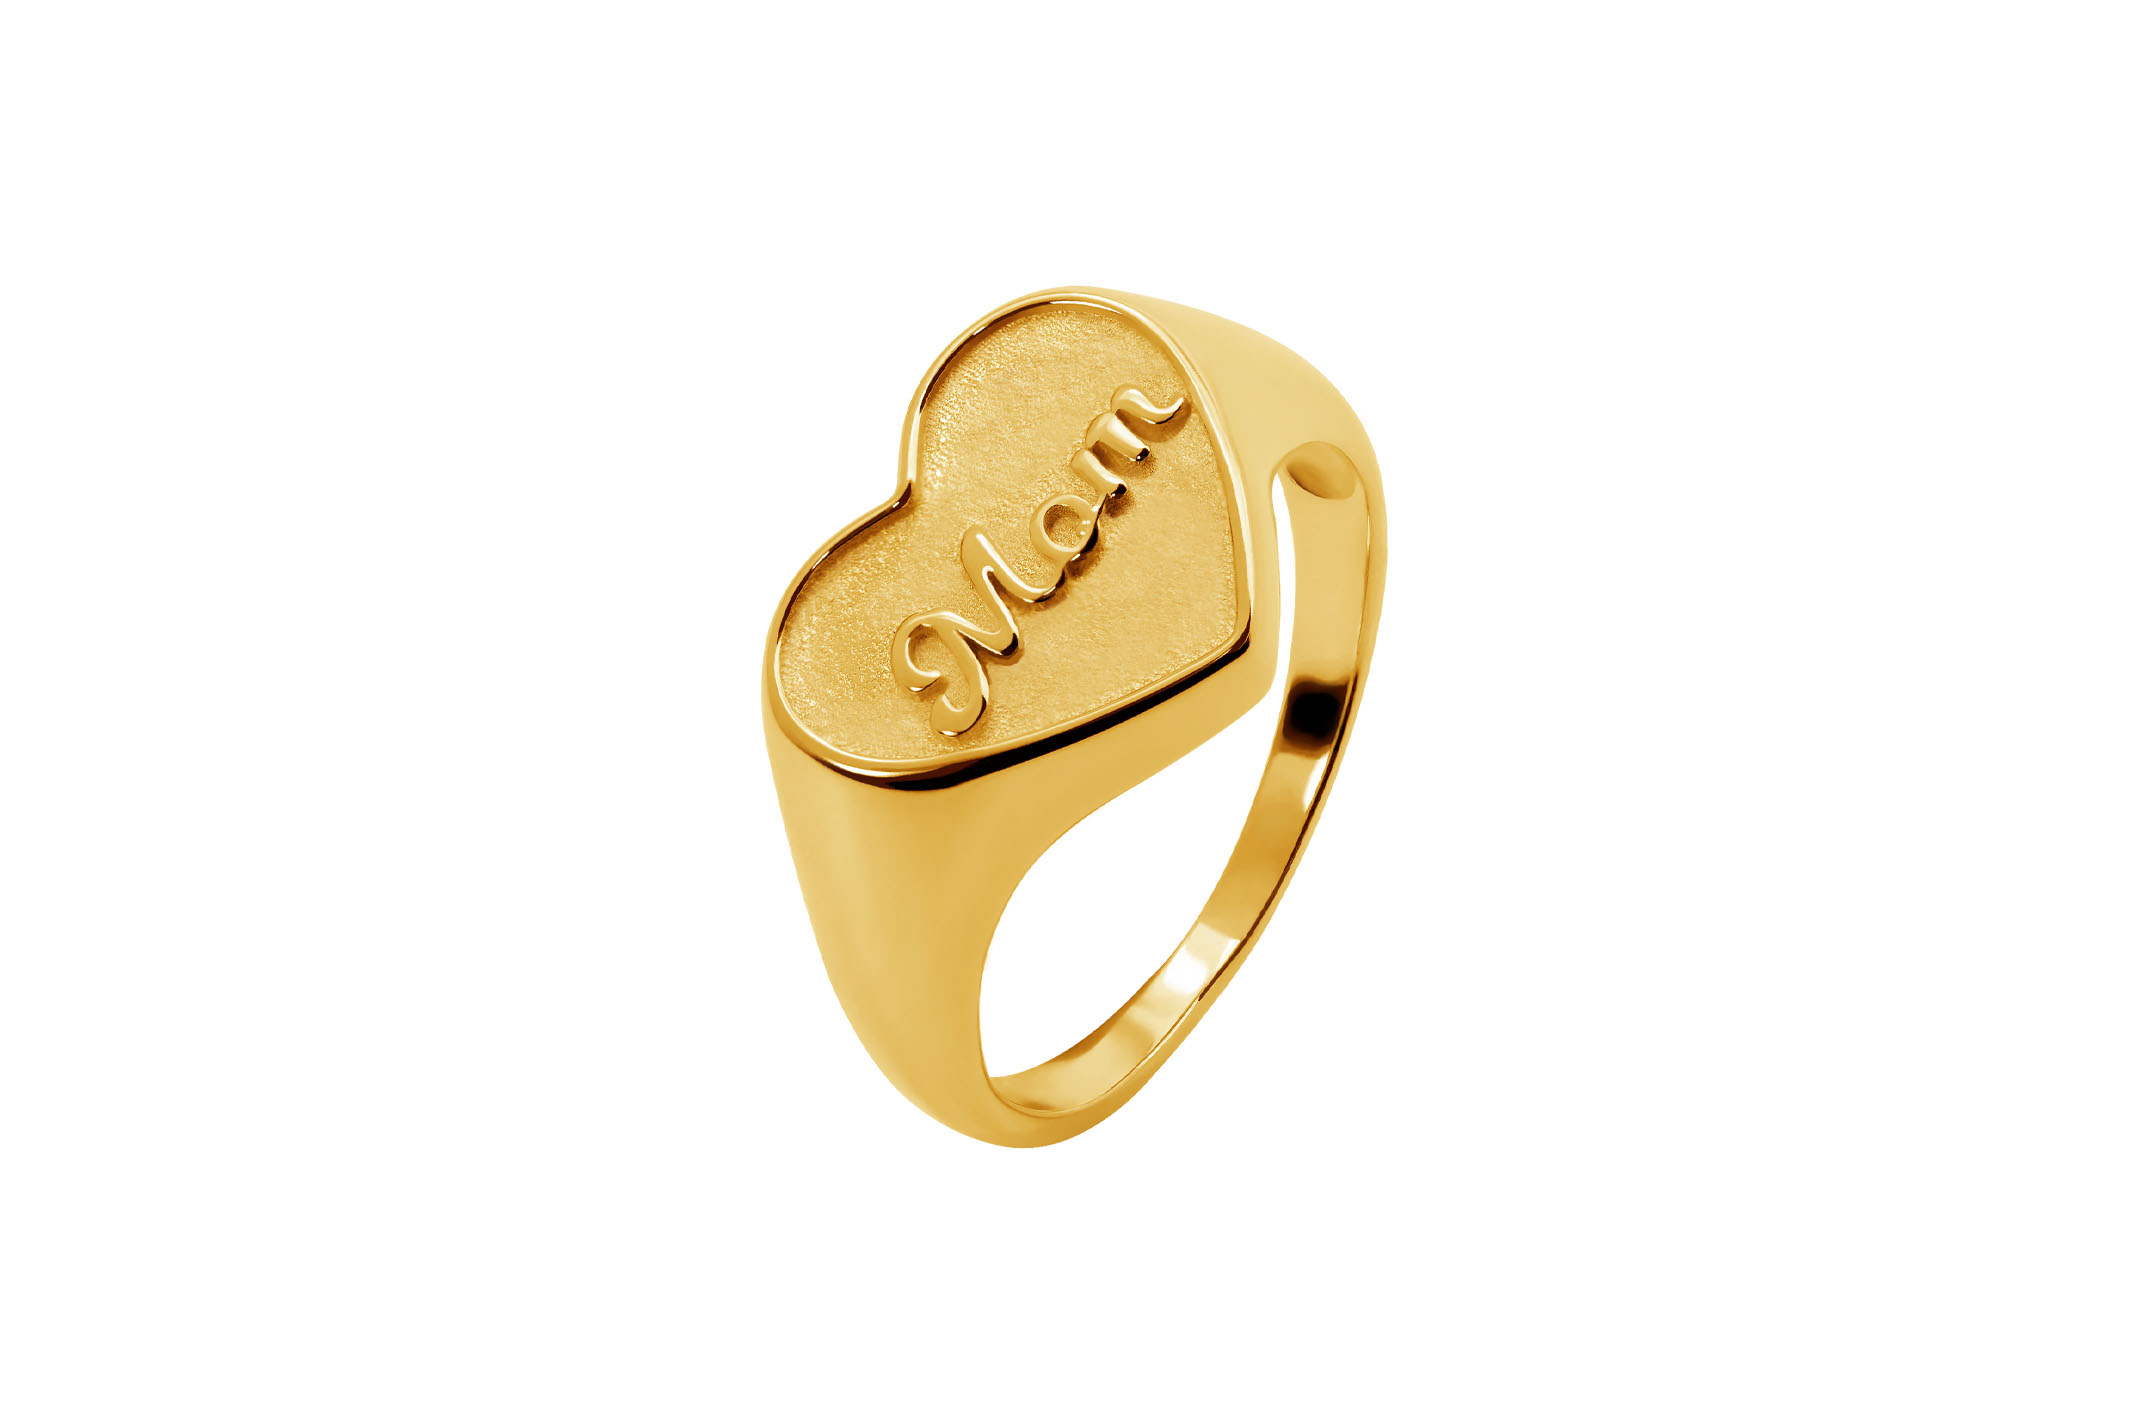 Joia: anel;Material: prata 925;Peso: 3.4 gr;Cor: amarelo;Género: mulher